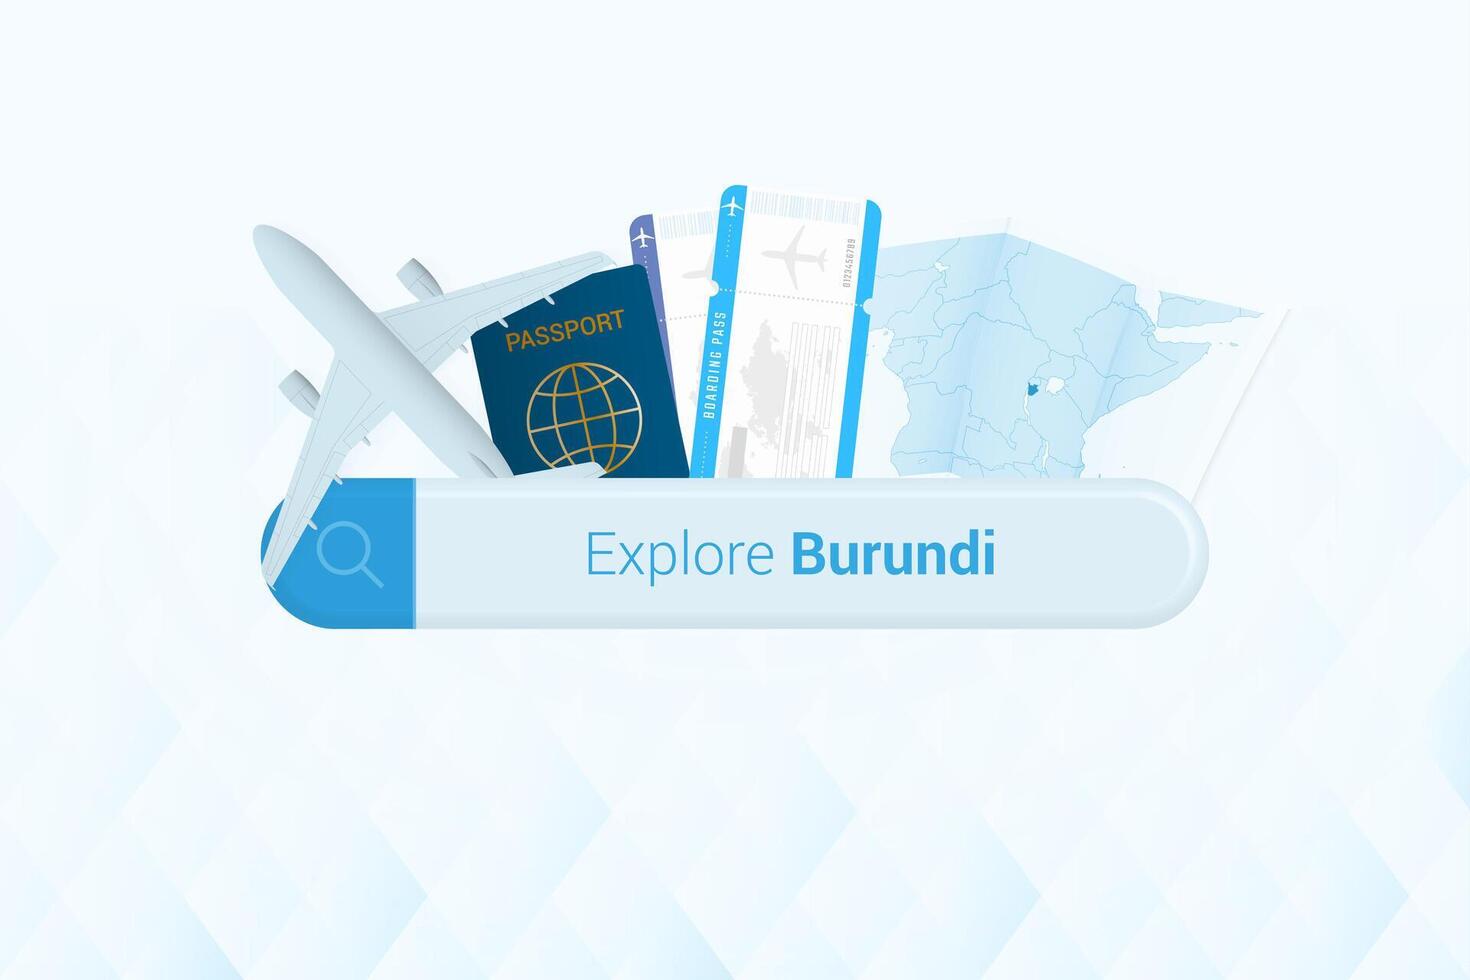 suchen Tickets zu Burundi oder Reise Ziel im Burundi. suchen Bar mit Flugzeug, Reisepass, Einsteigen passieren, Tickets und Karte. vektor